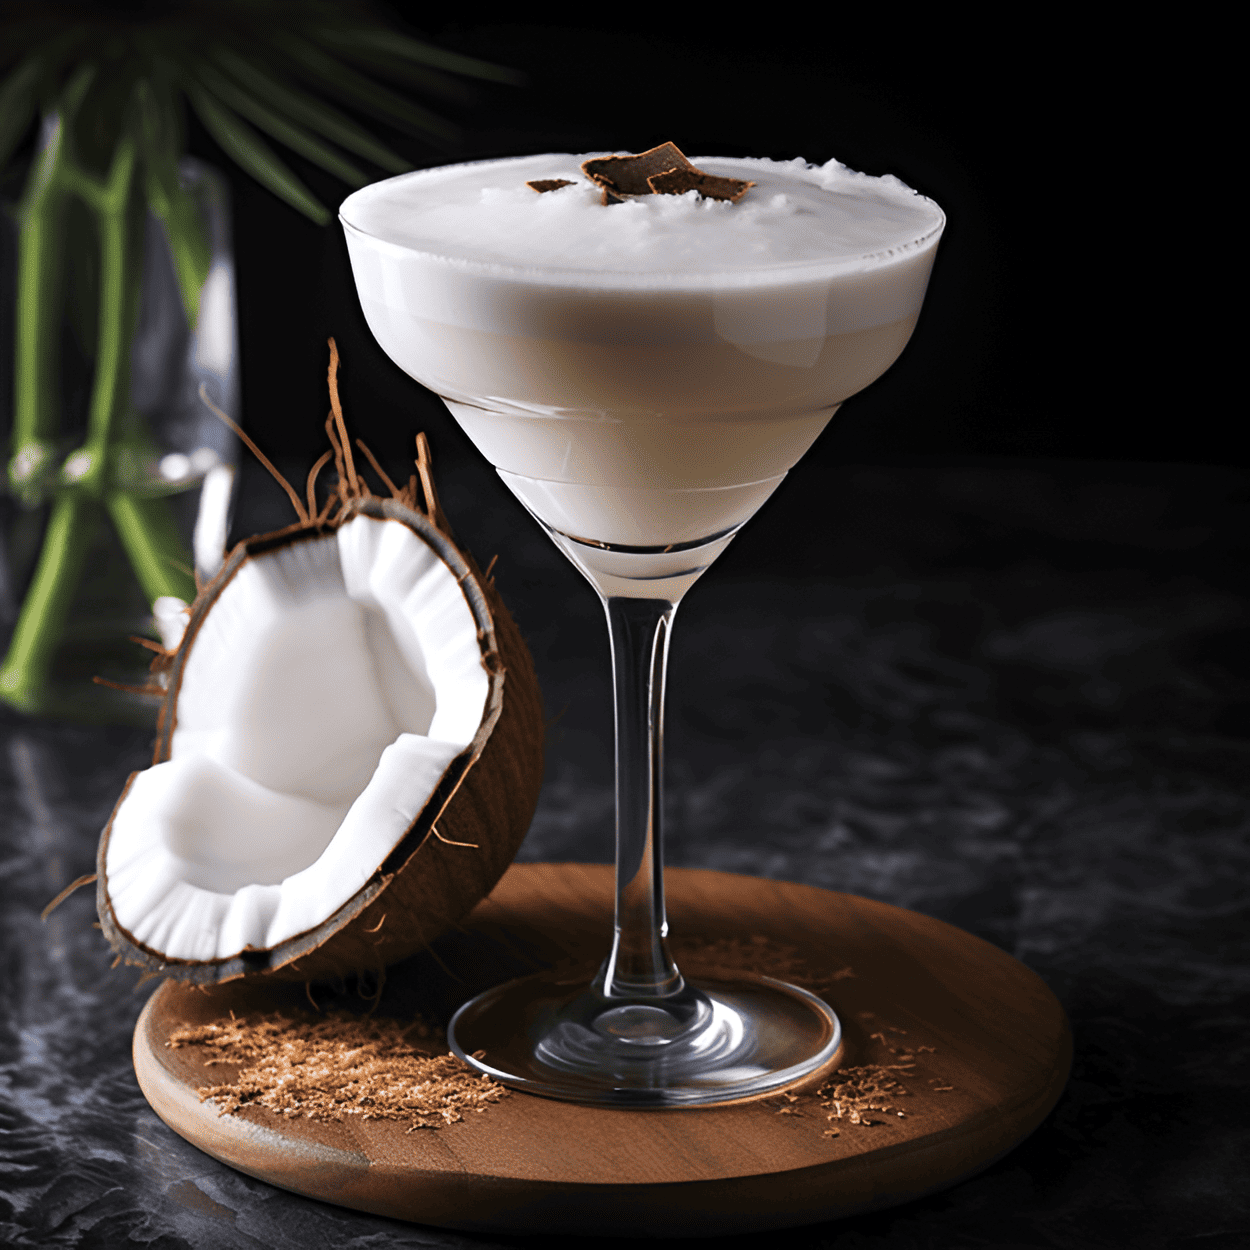 Ruso Blanco de Coco Cóctel Receta - Este cóctel es cremoso, dulce y ligeramente nuez. La leche de coco le da un toque tropical, mientras que el vodka y el licor de café proporcionan un sabor fuerte y robusto. Es una bebida rica e indulgente que deja un sabor persistente de coco en el paladar.